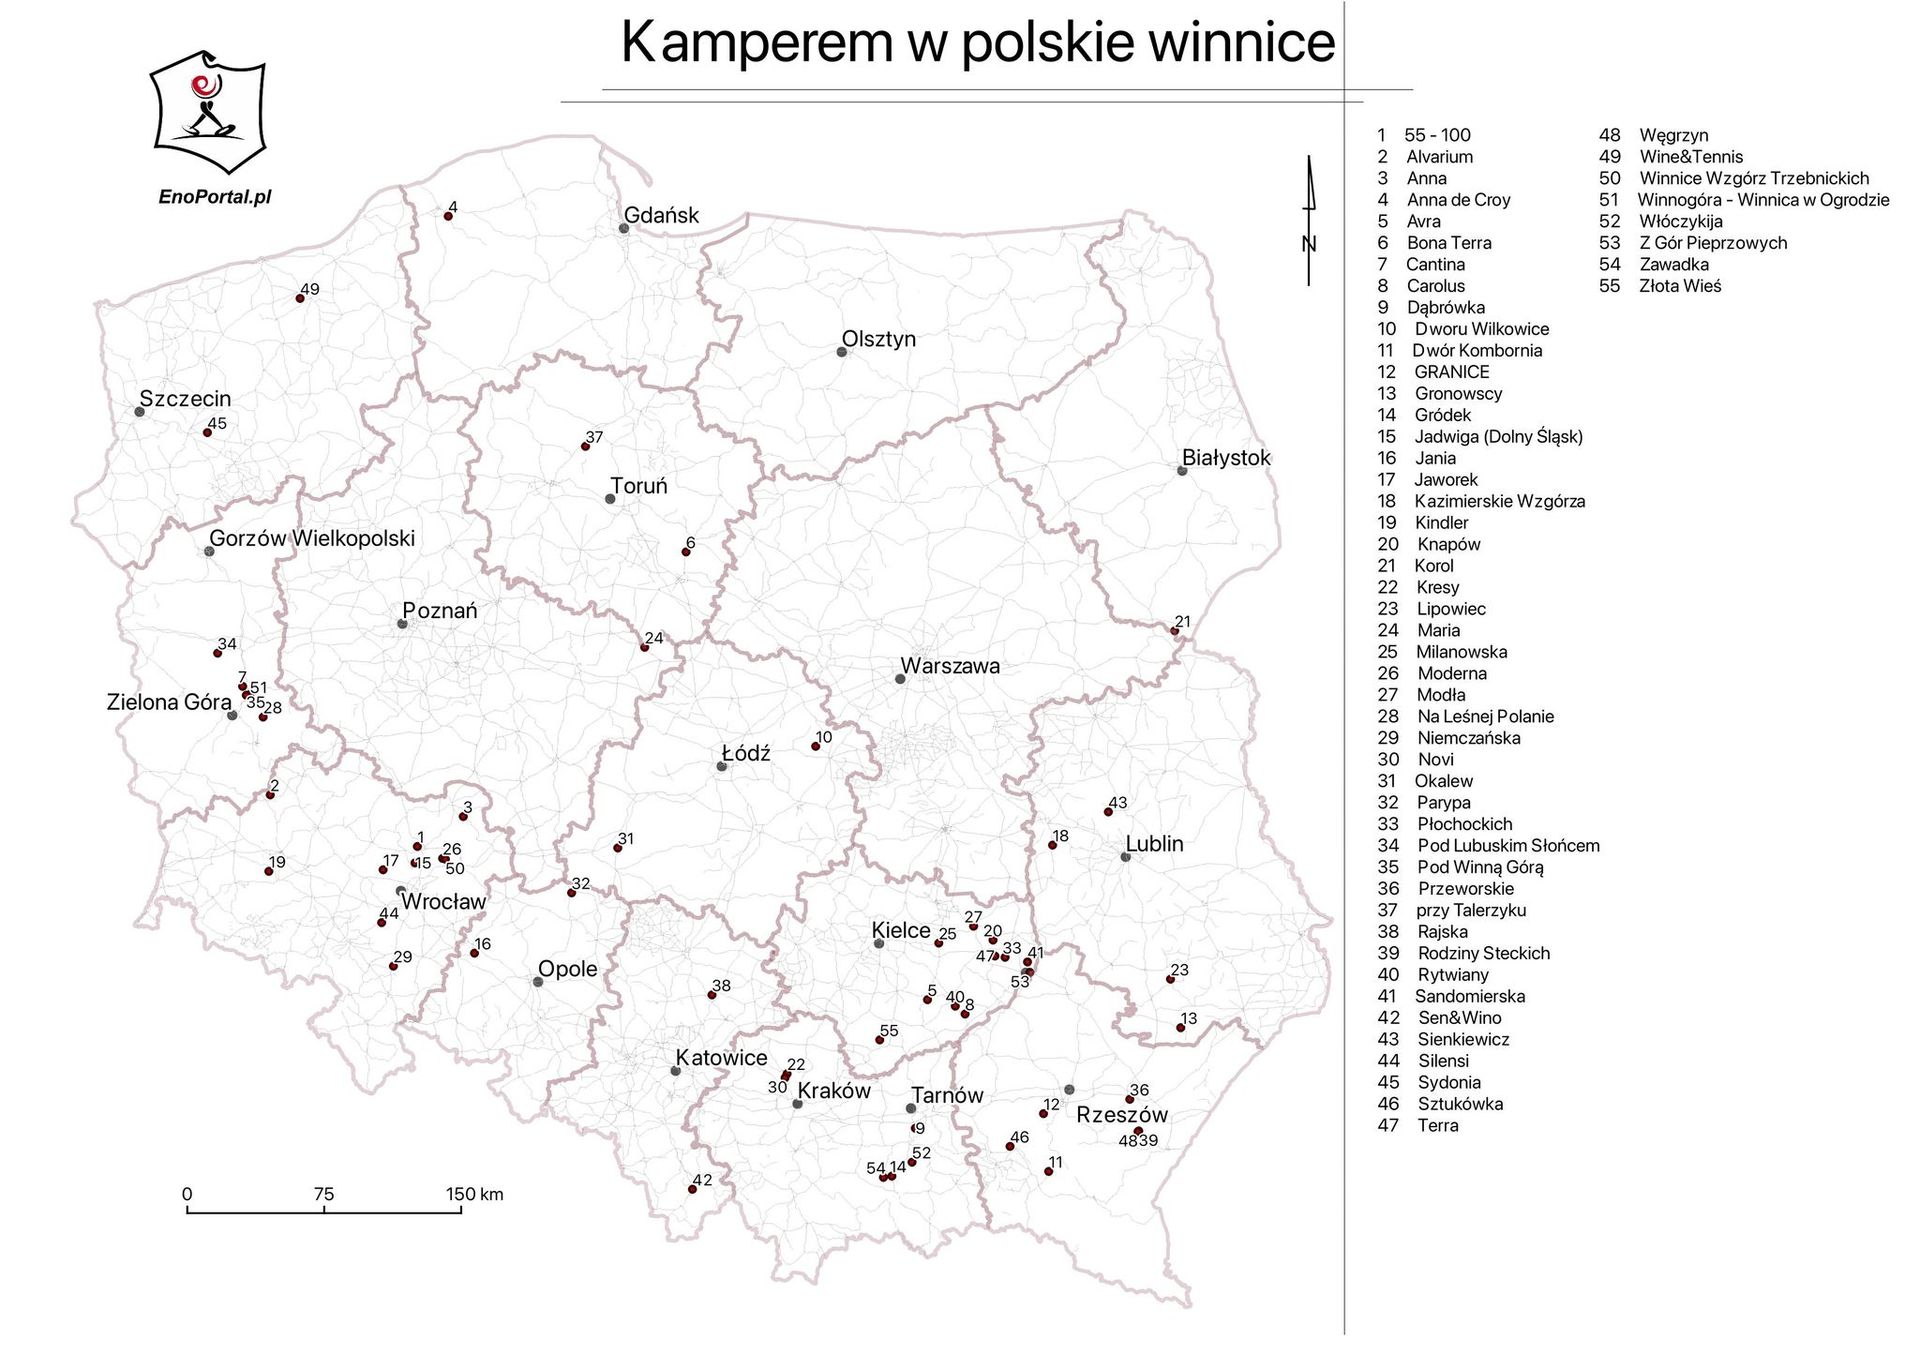 55 polskich winnic przyjaznych kamperom – zdjęcie 2